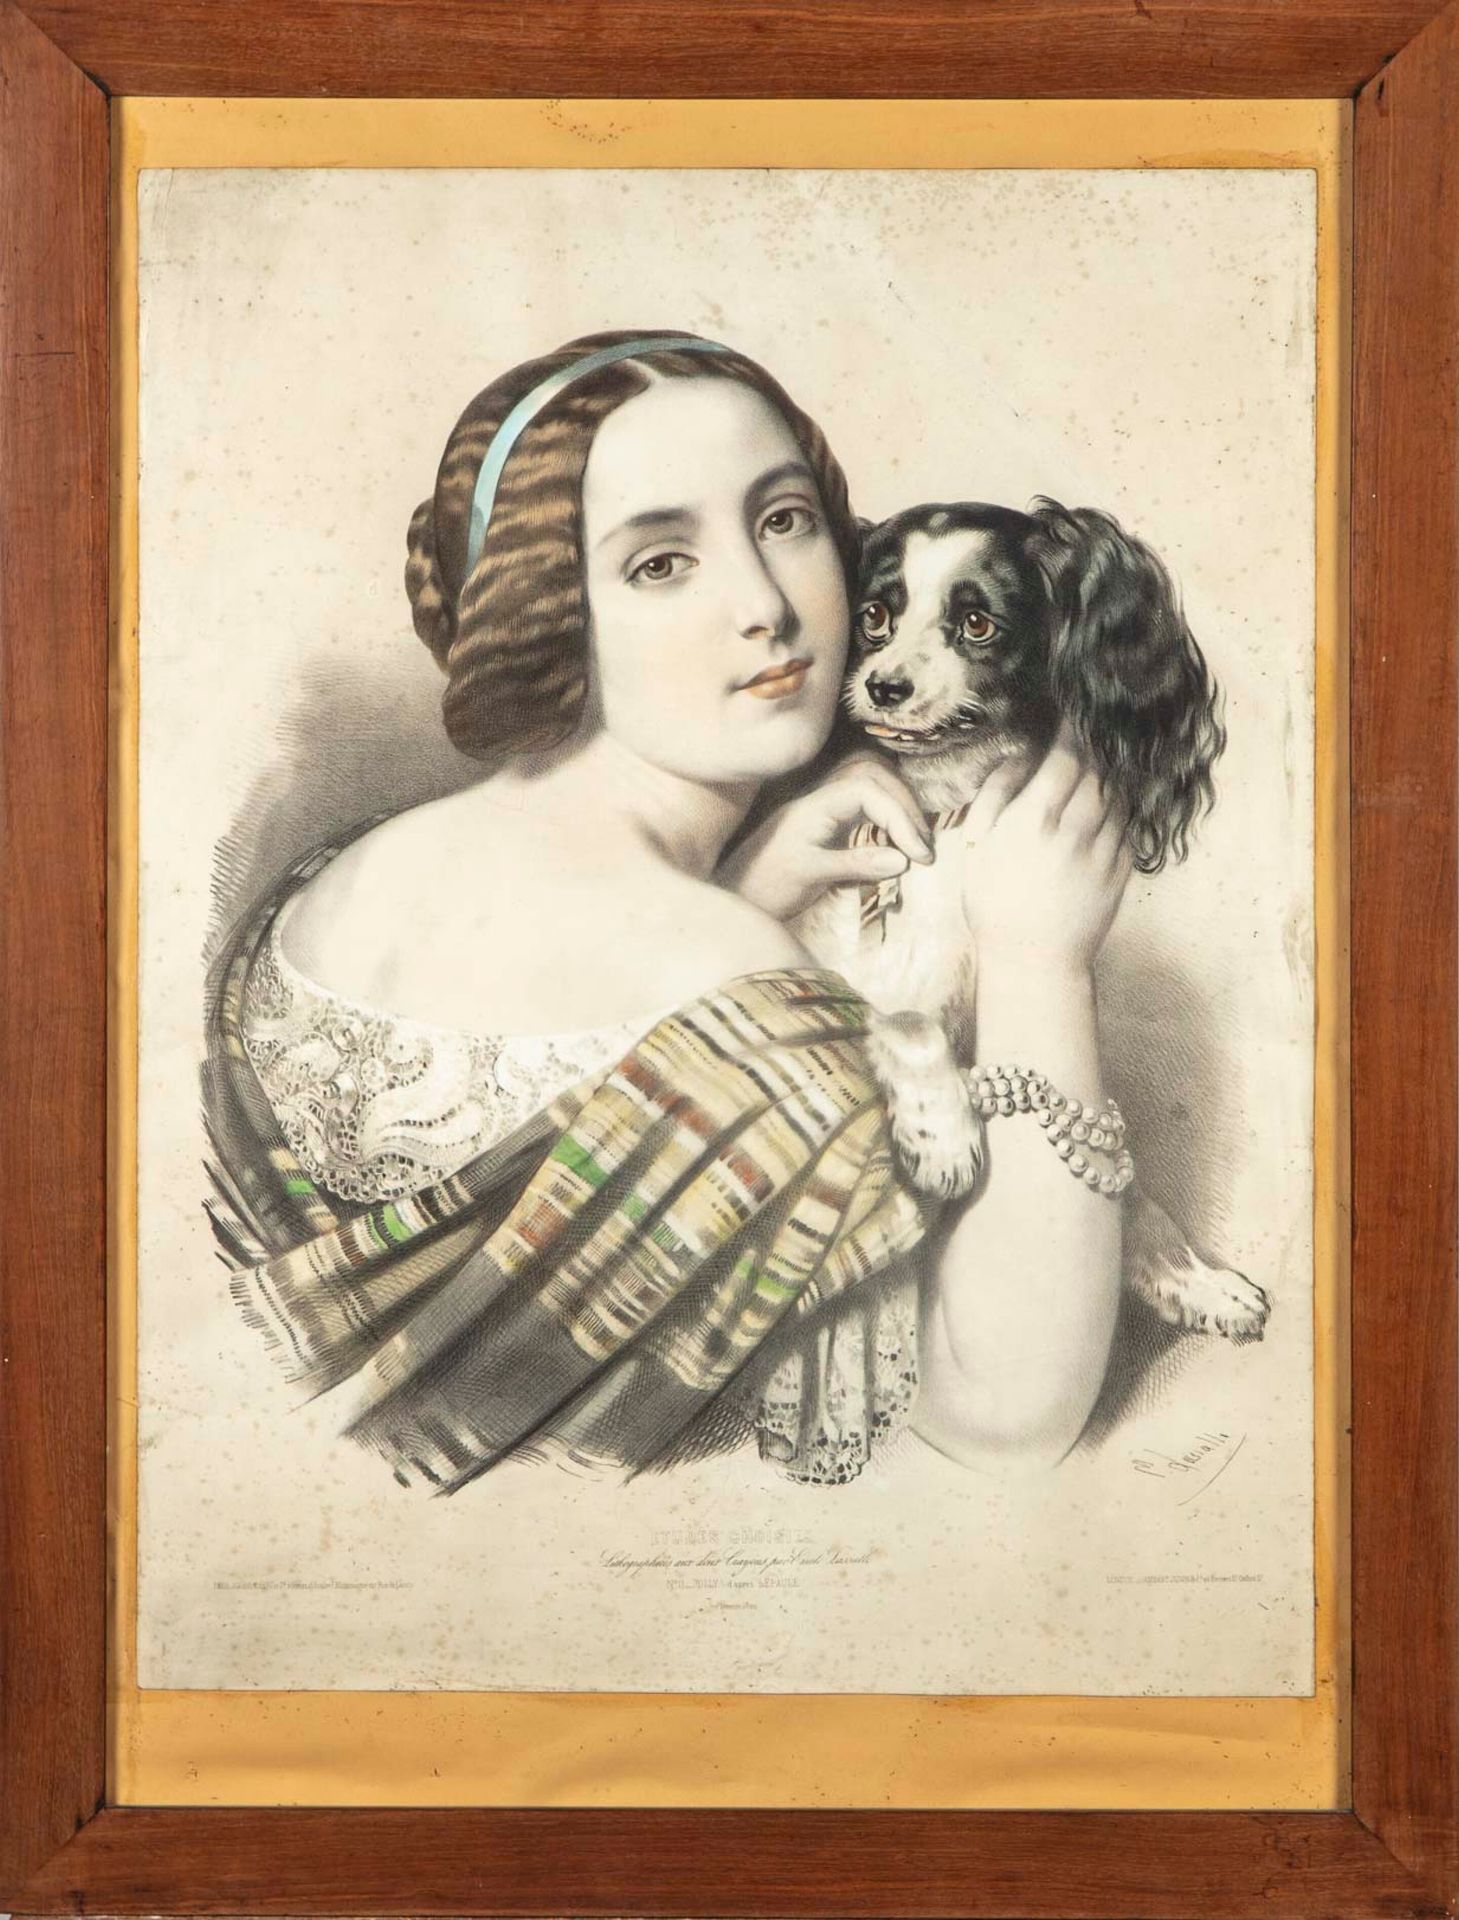 LEPAULE Según Lépaule, grabado por Emile Lassalle

Jolly, retrato de una mujer c&hellip;